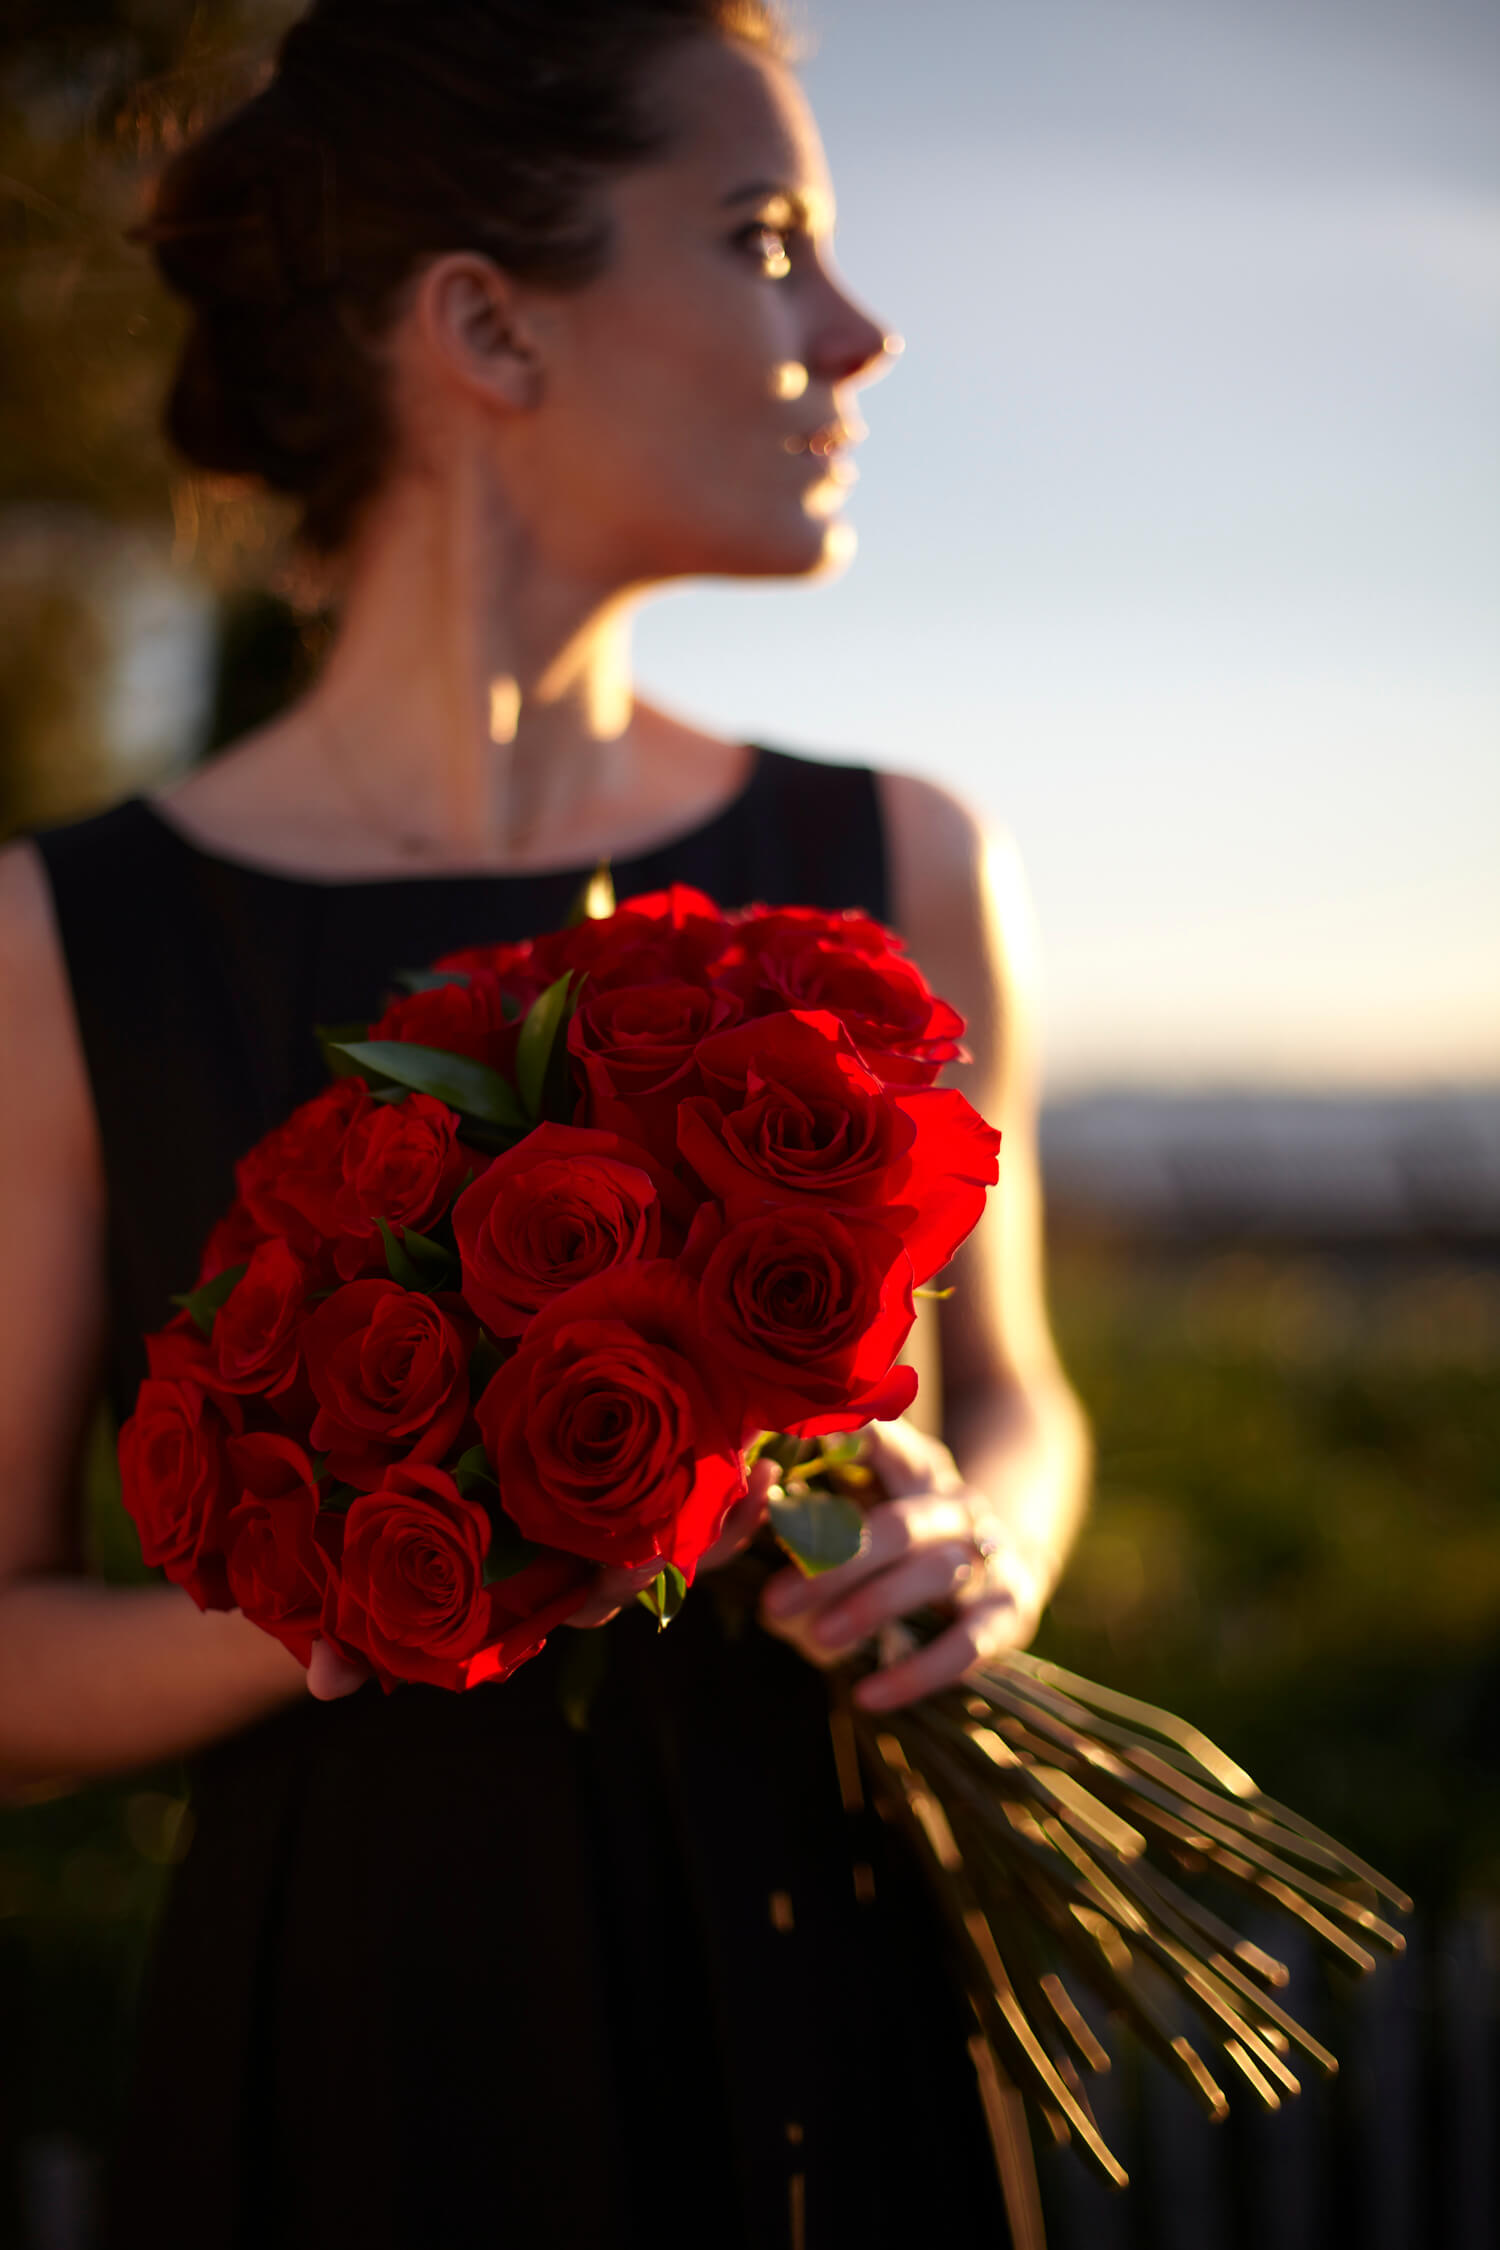 Ảnh cô gái cầm hoa hồng